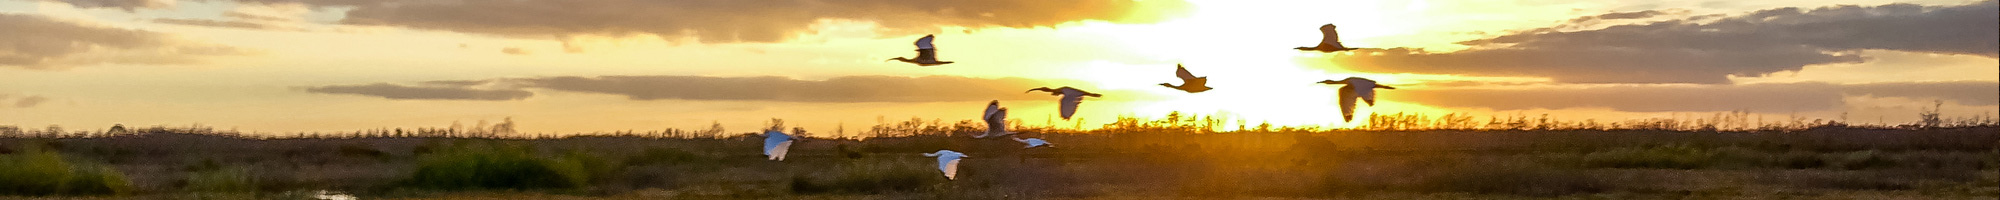 ducks flying over marsh at sunset